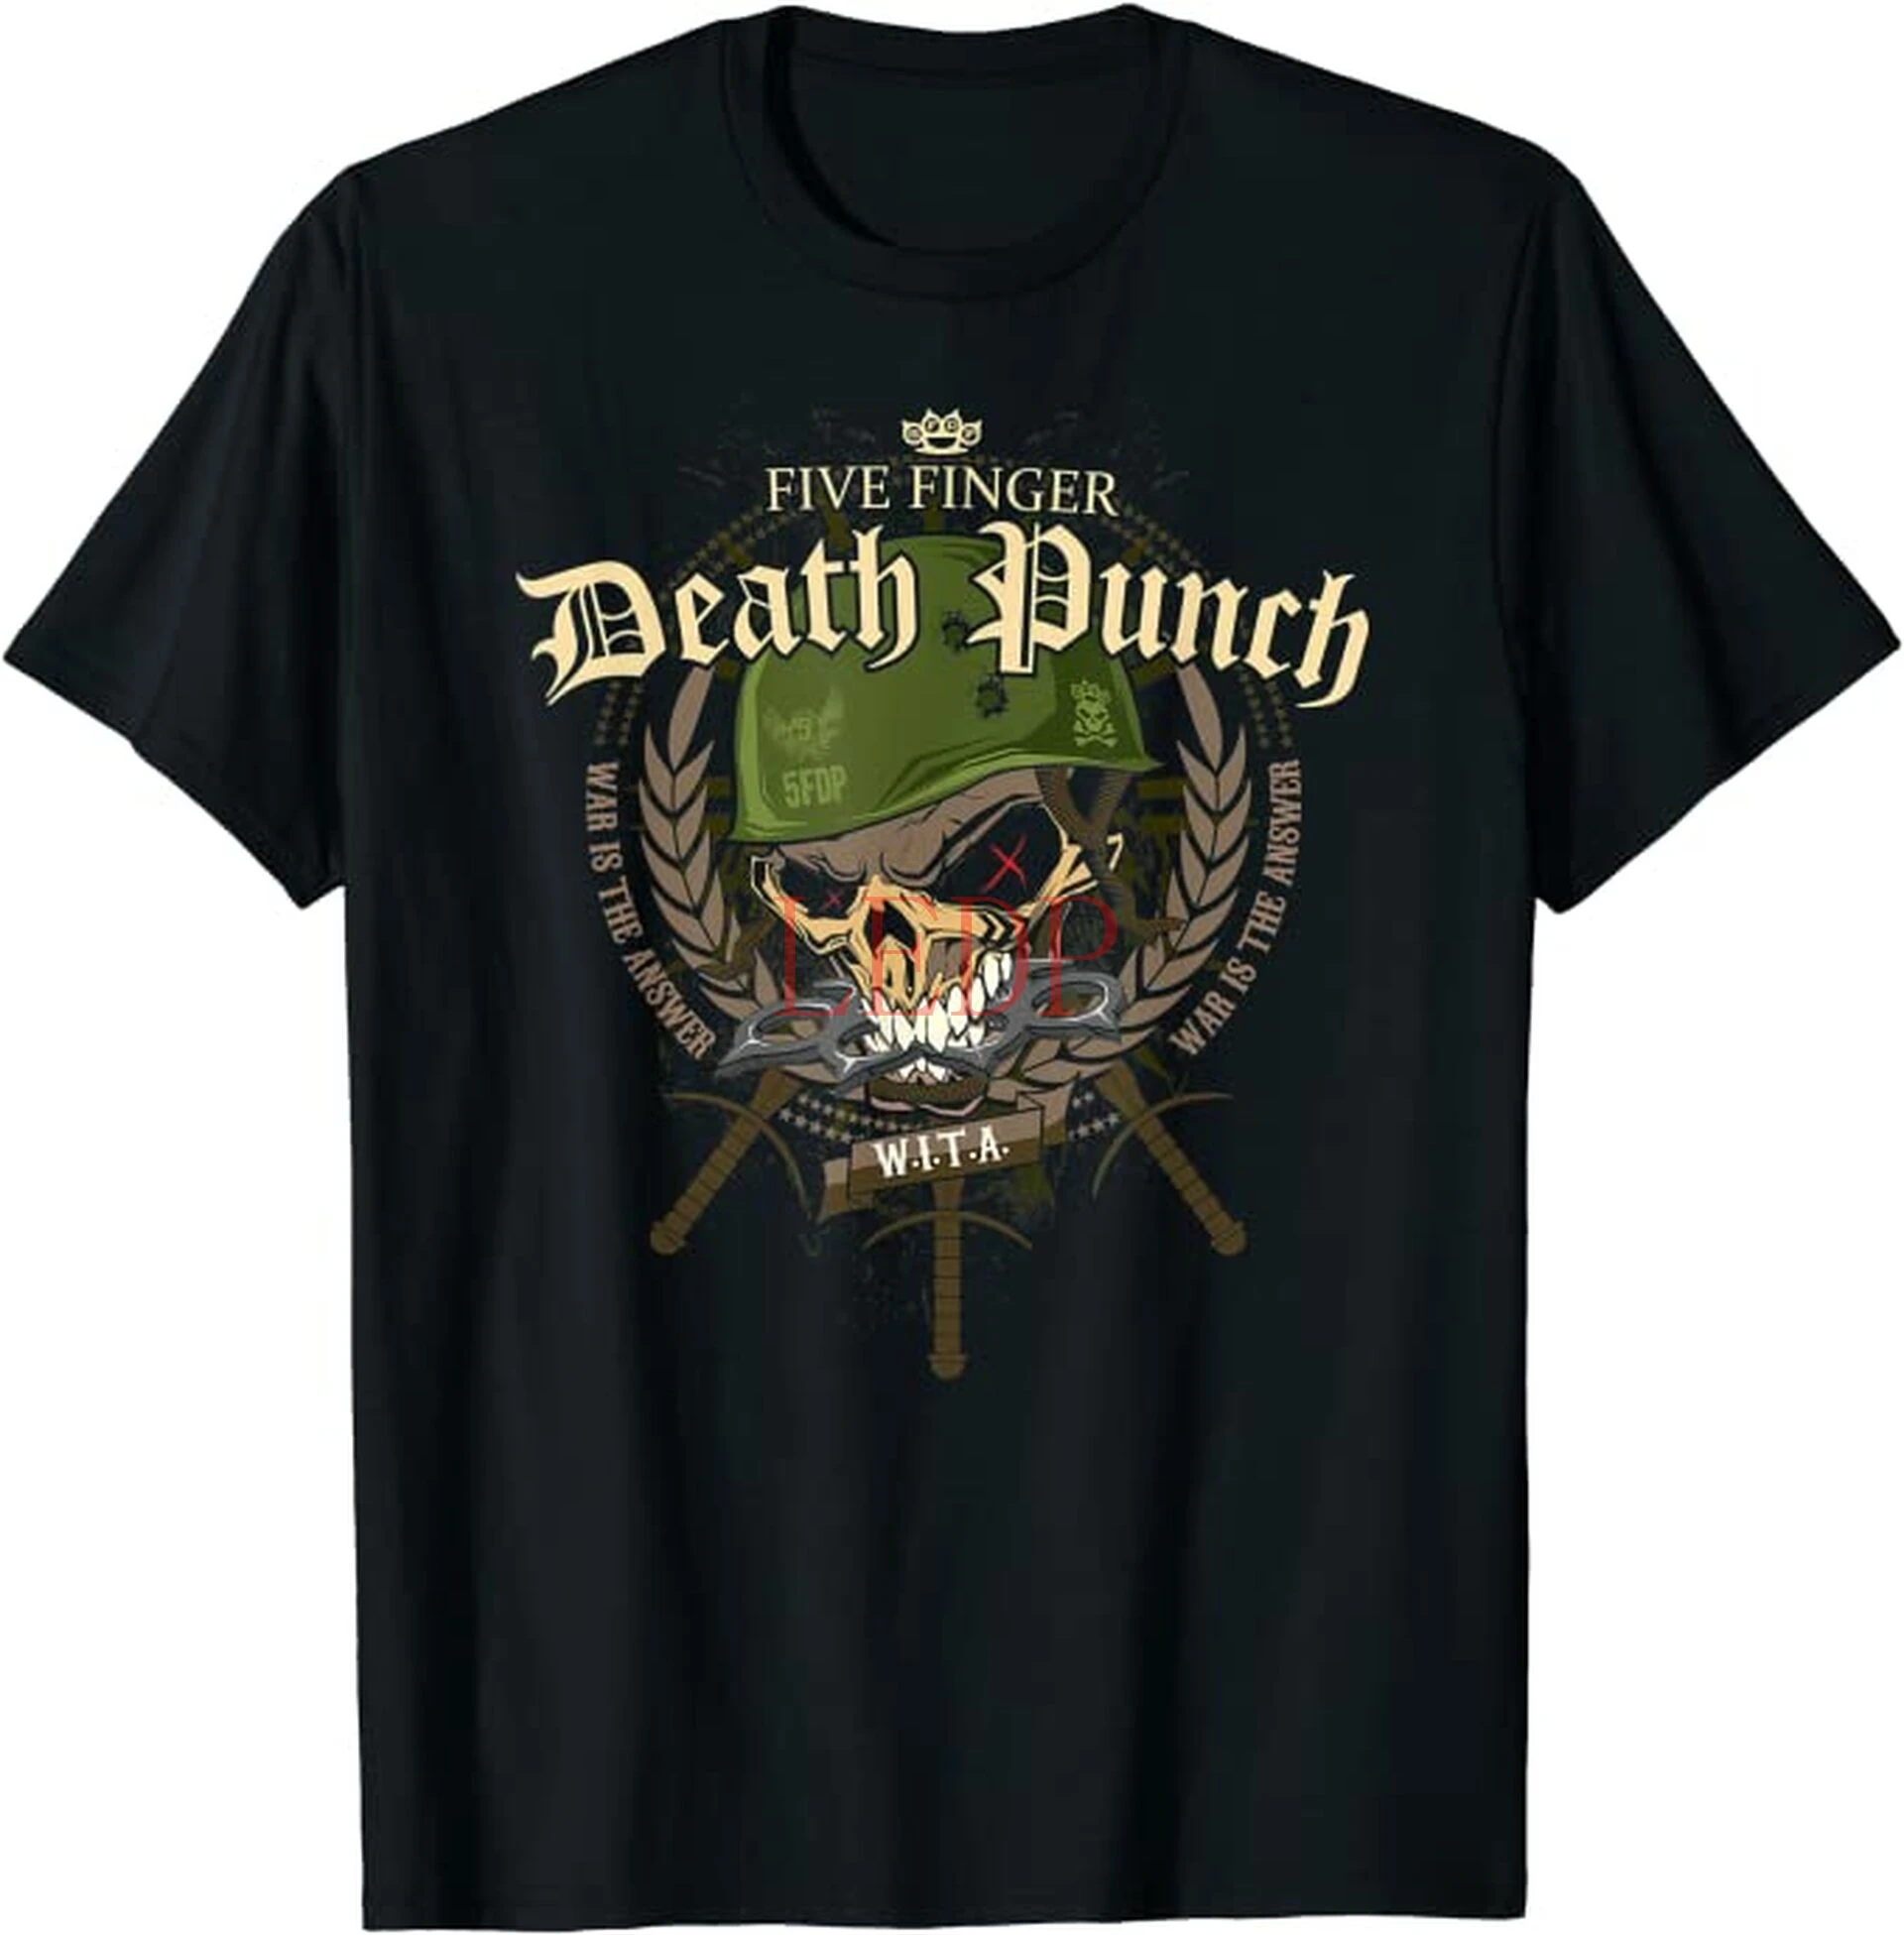 

Five Finger Death Punch War Is The Answer T-Shirt Mens Black Music Top Tee Shirt Brand New T Shirt Man Cotton